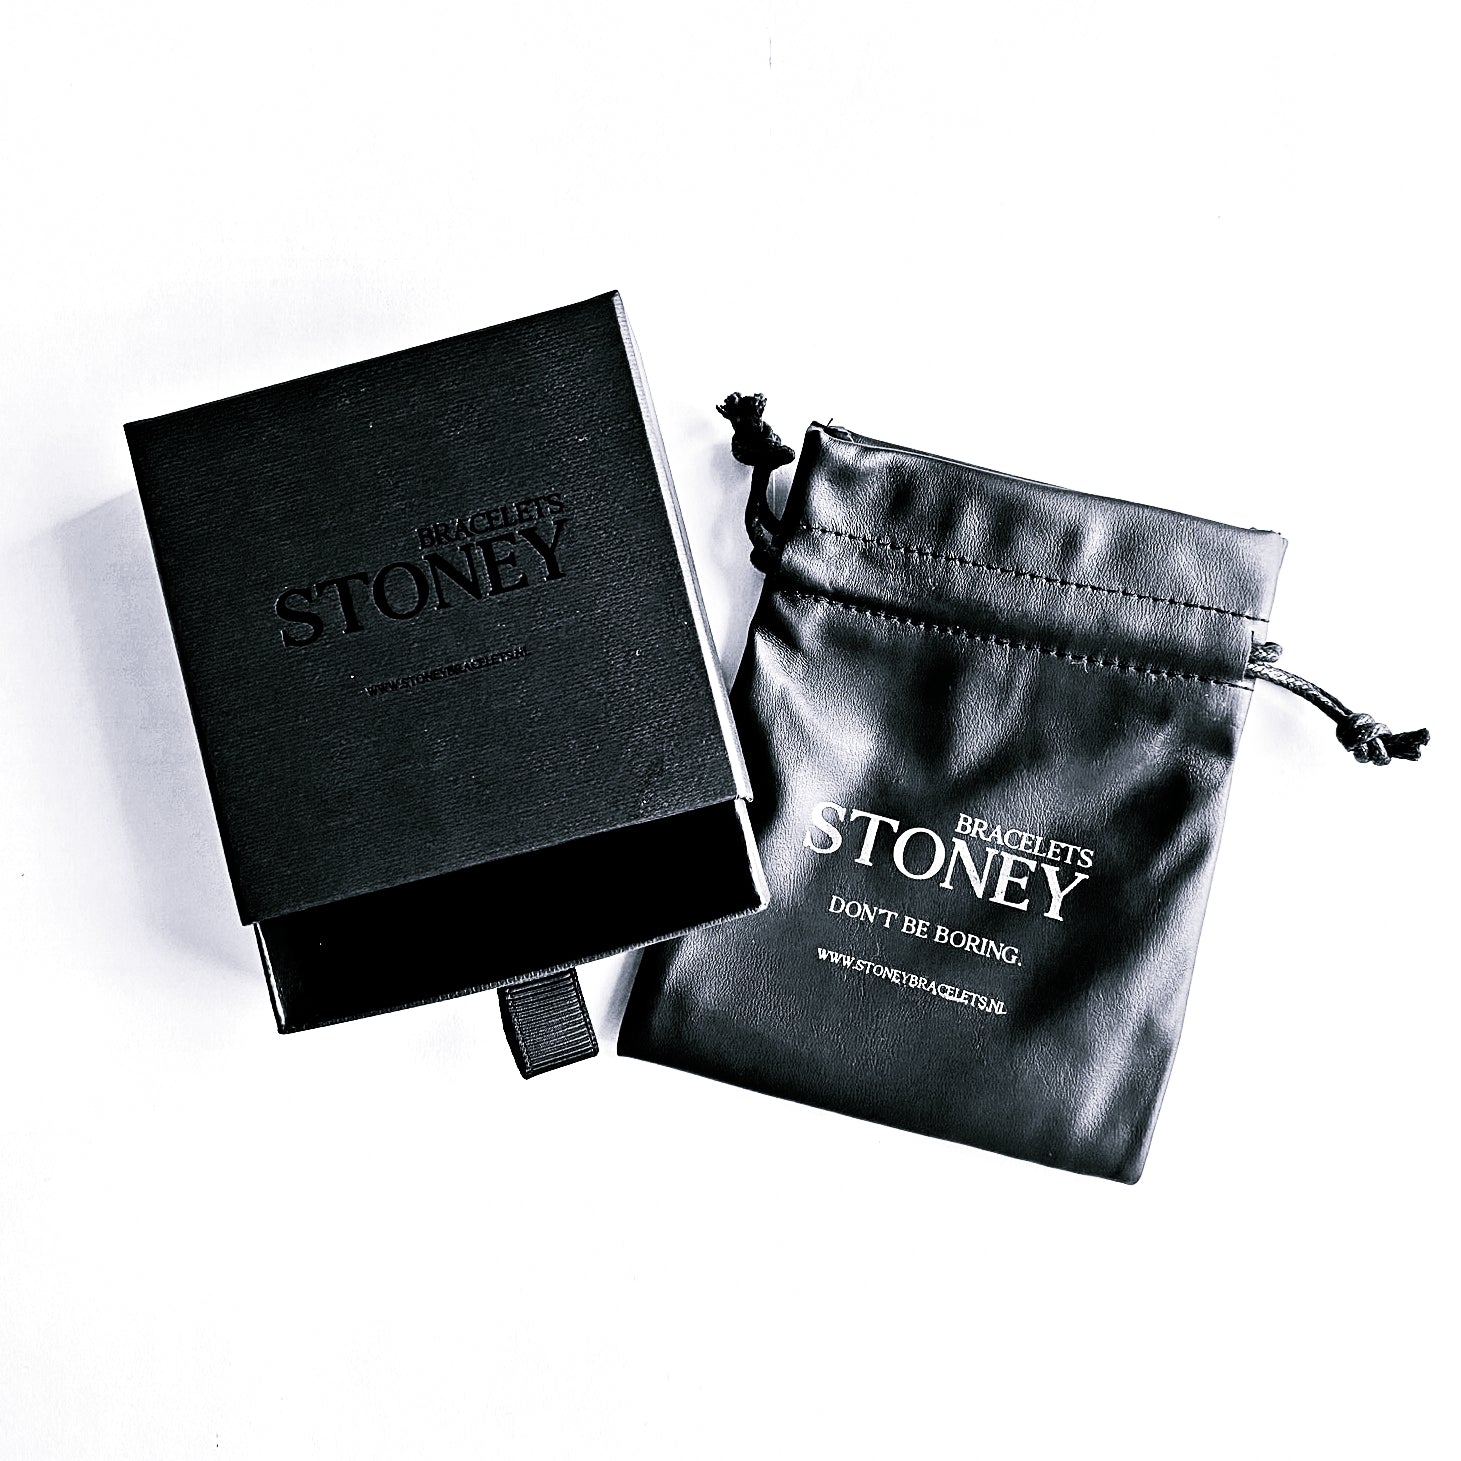 Een zwart zakje met het woord Stoney Bracelets erop, perfect voor het bewaren van Dragon Vein Stones (8 mm) sieraden of armbanden.